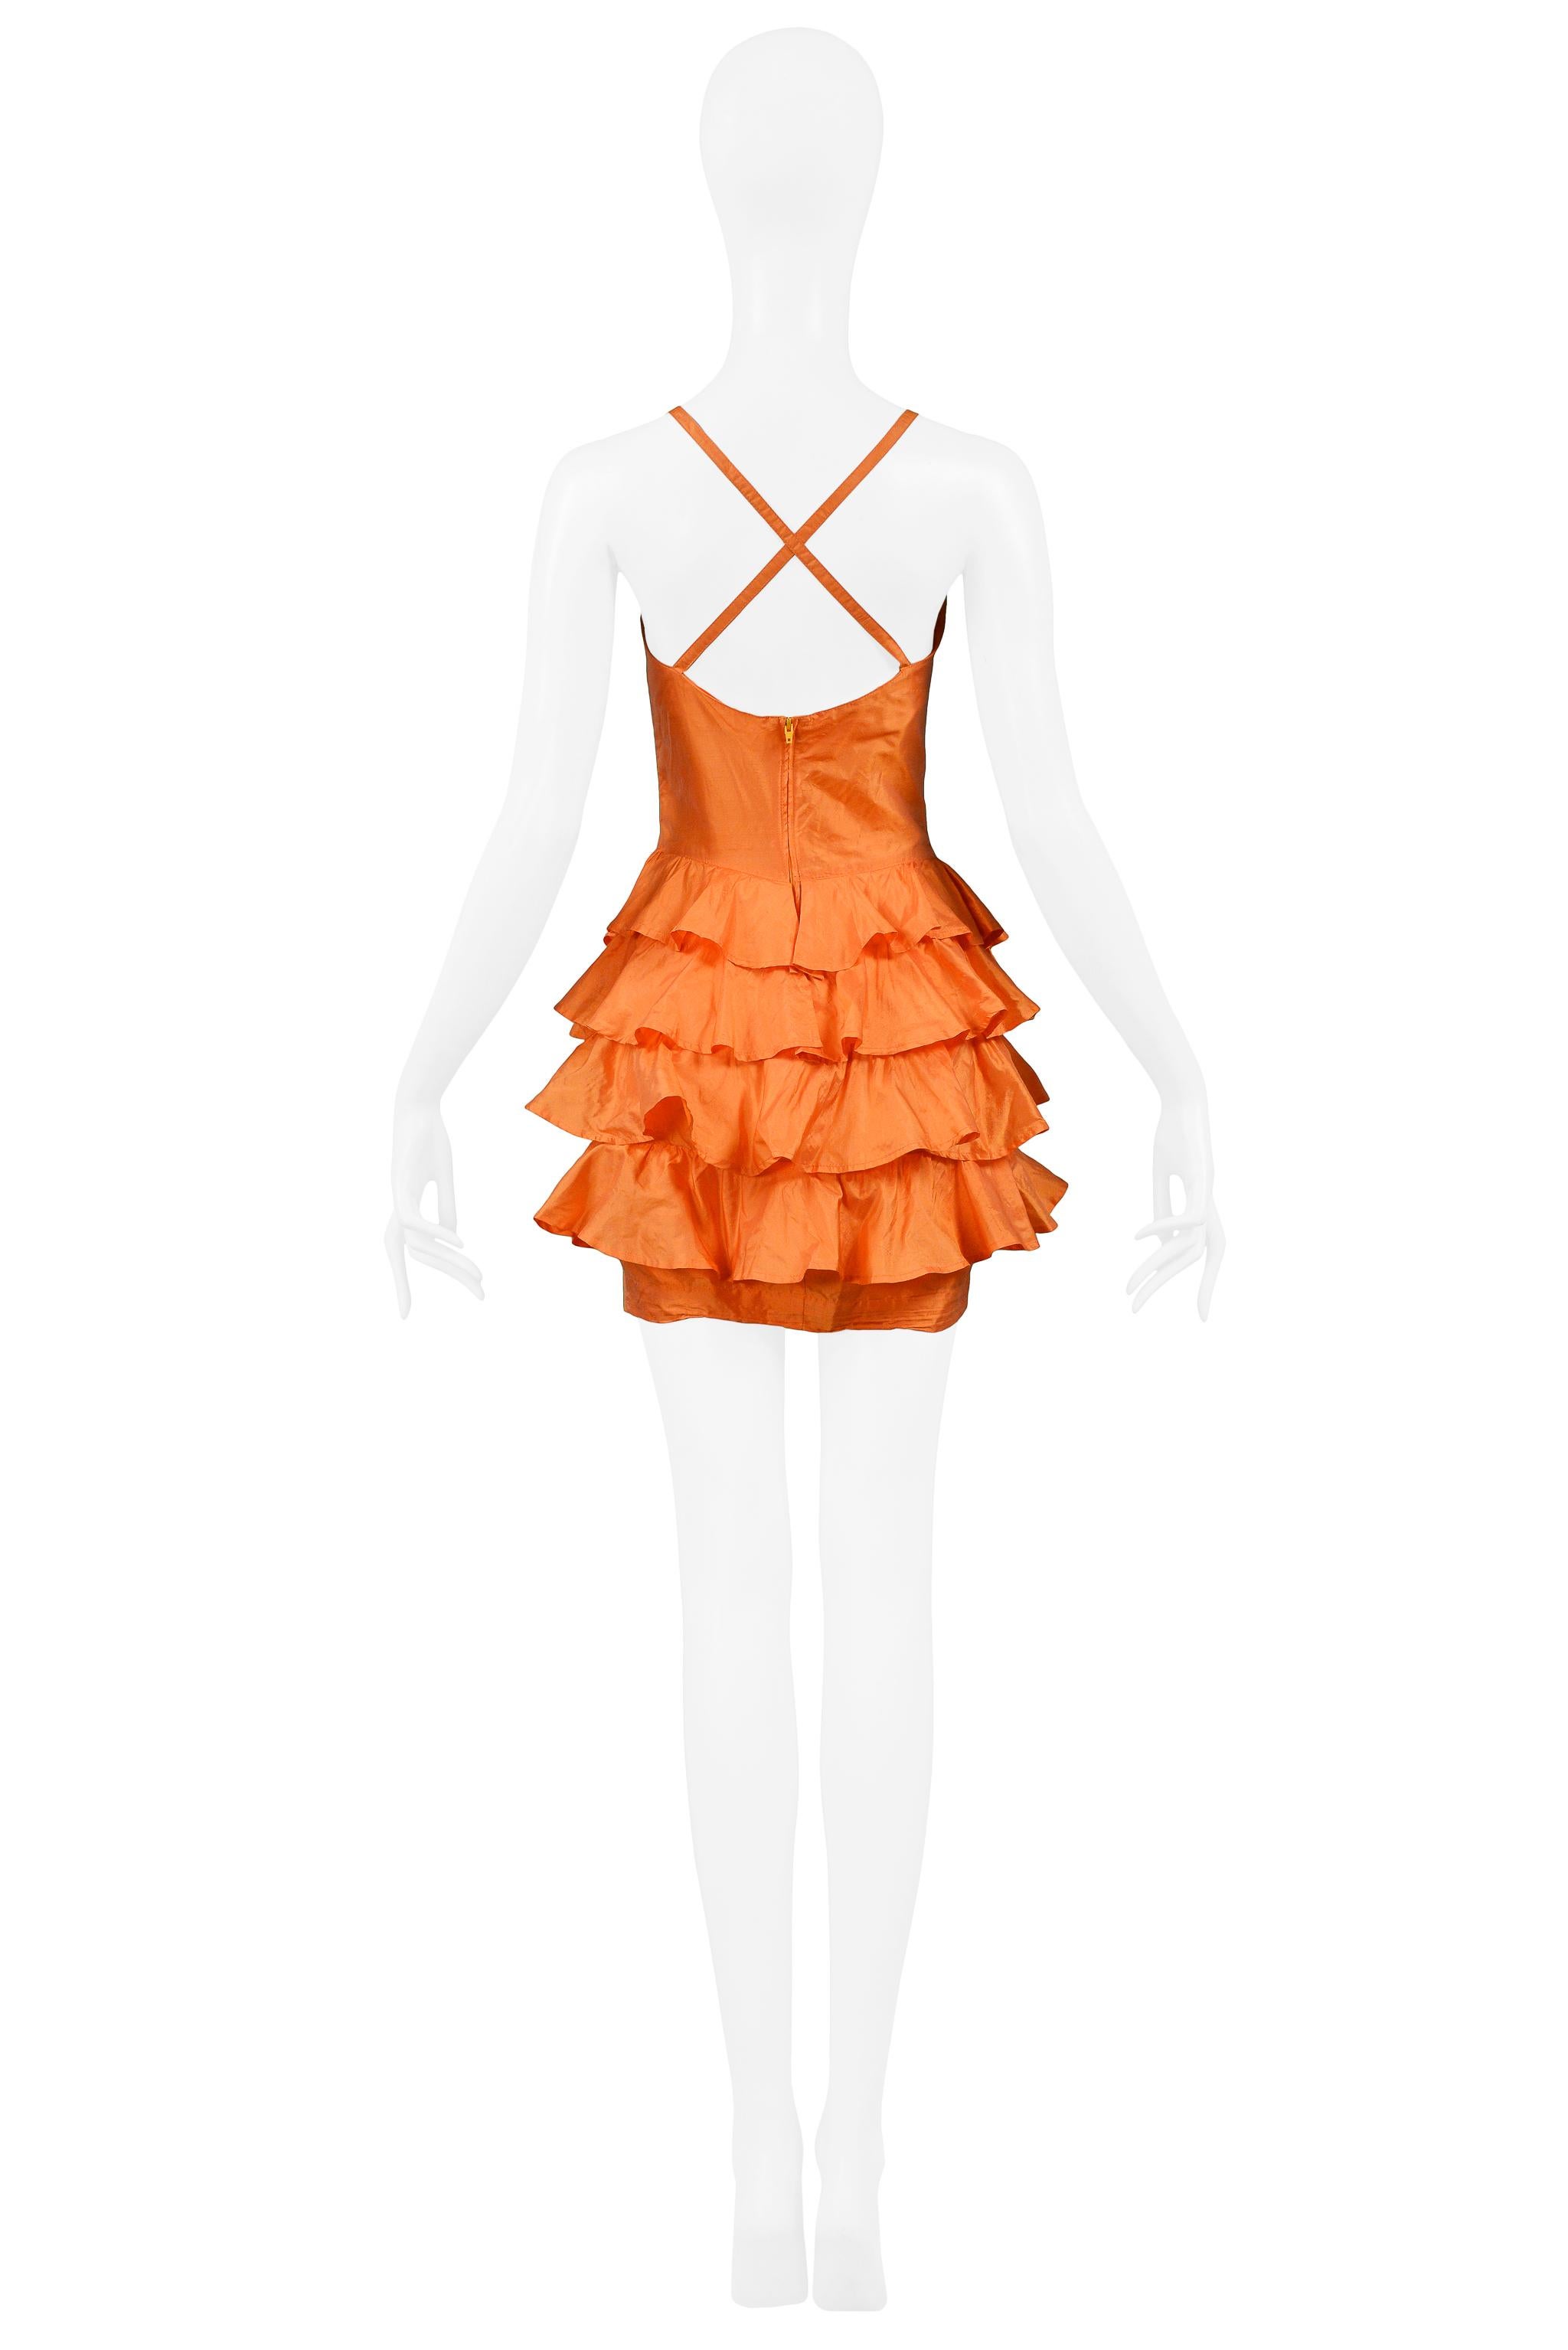 Women's Byblos Orange Silk Ruffle Dress 1992 For Sale